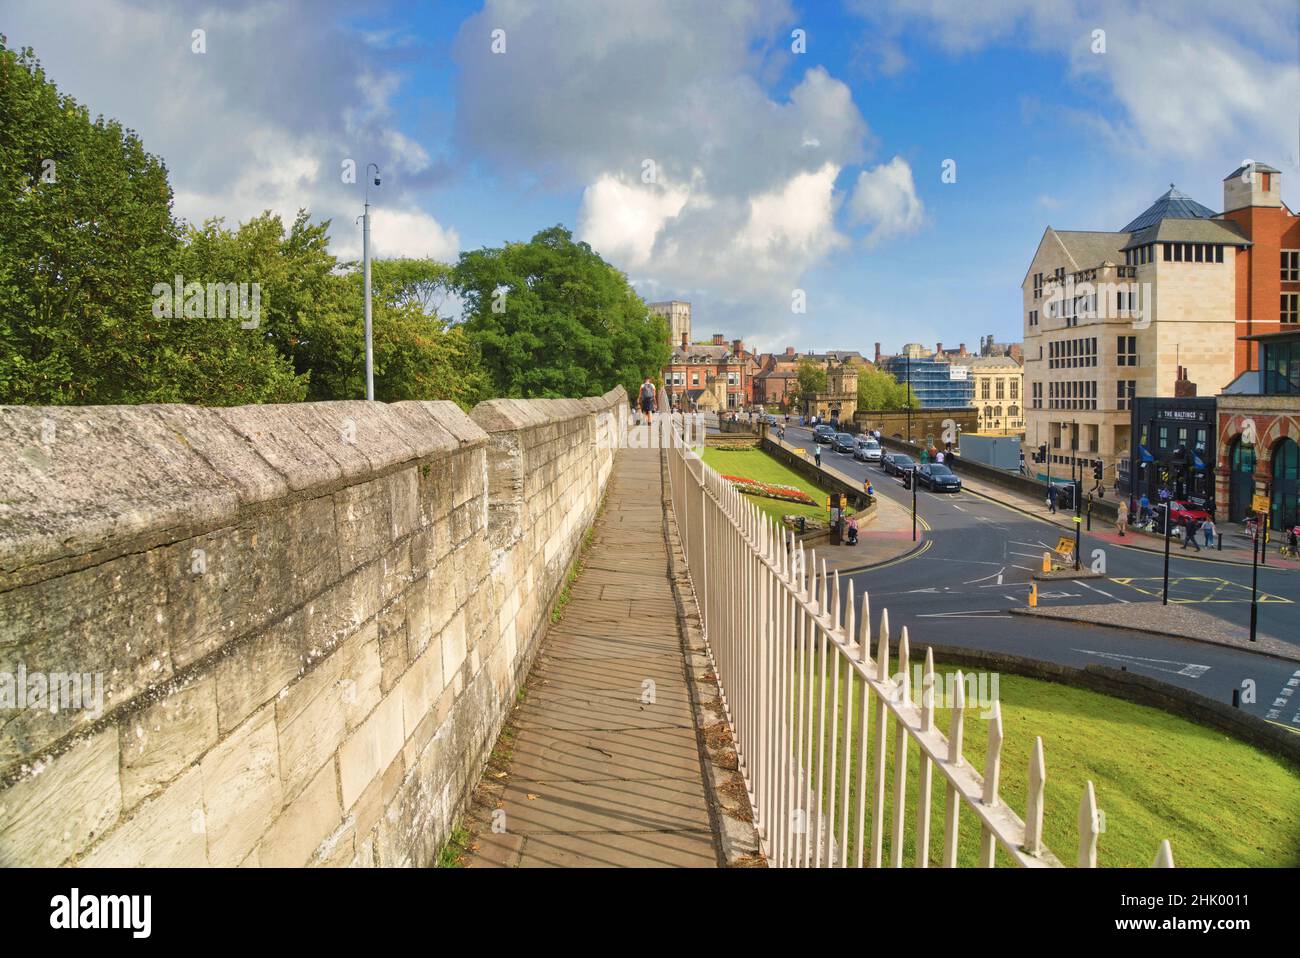 Vue sur le pont de Lendal vers York minster en forme de remparts de la ville.Fleurs, lits.Centre-ville de York.Yorkshire, Angleterre, Royaume-Uni Banque D'Images